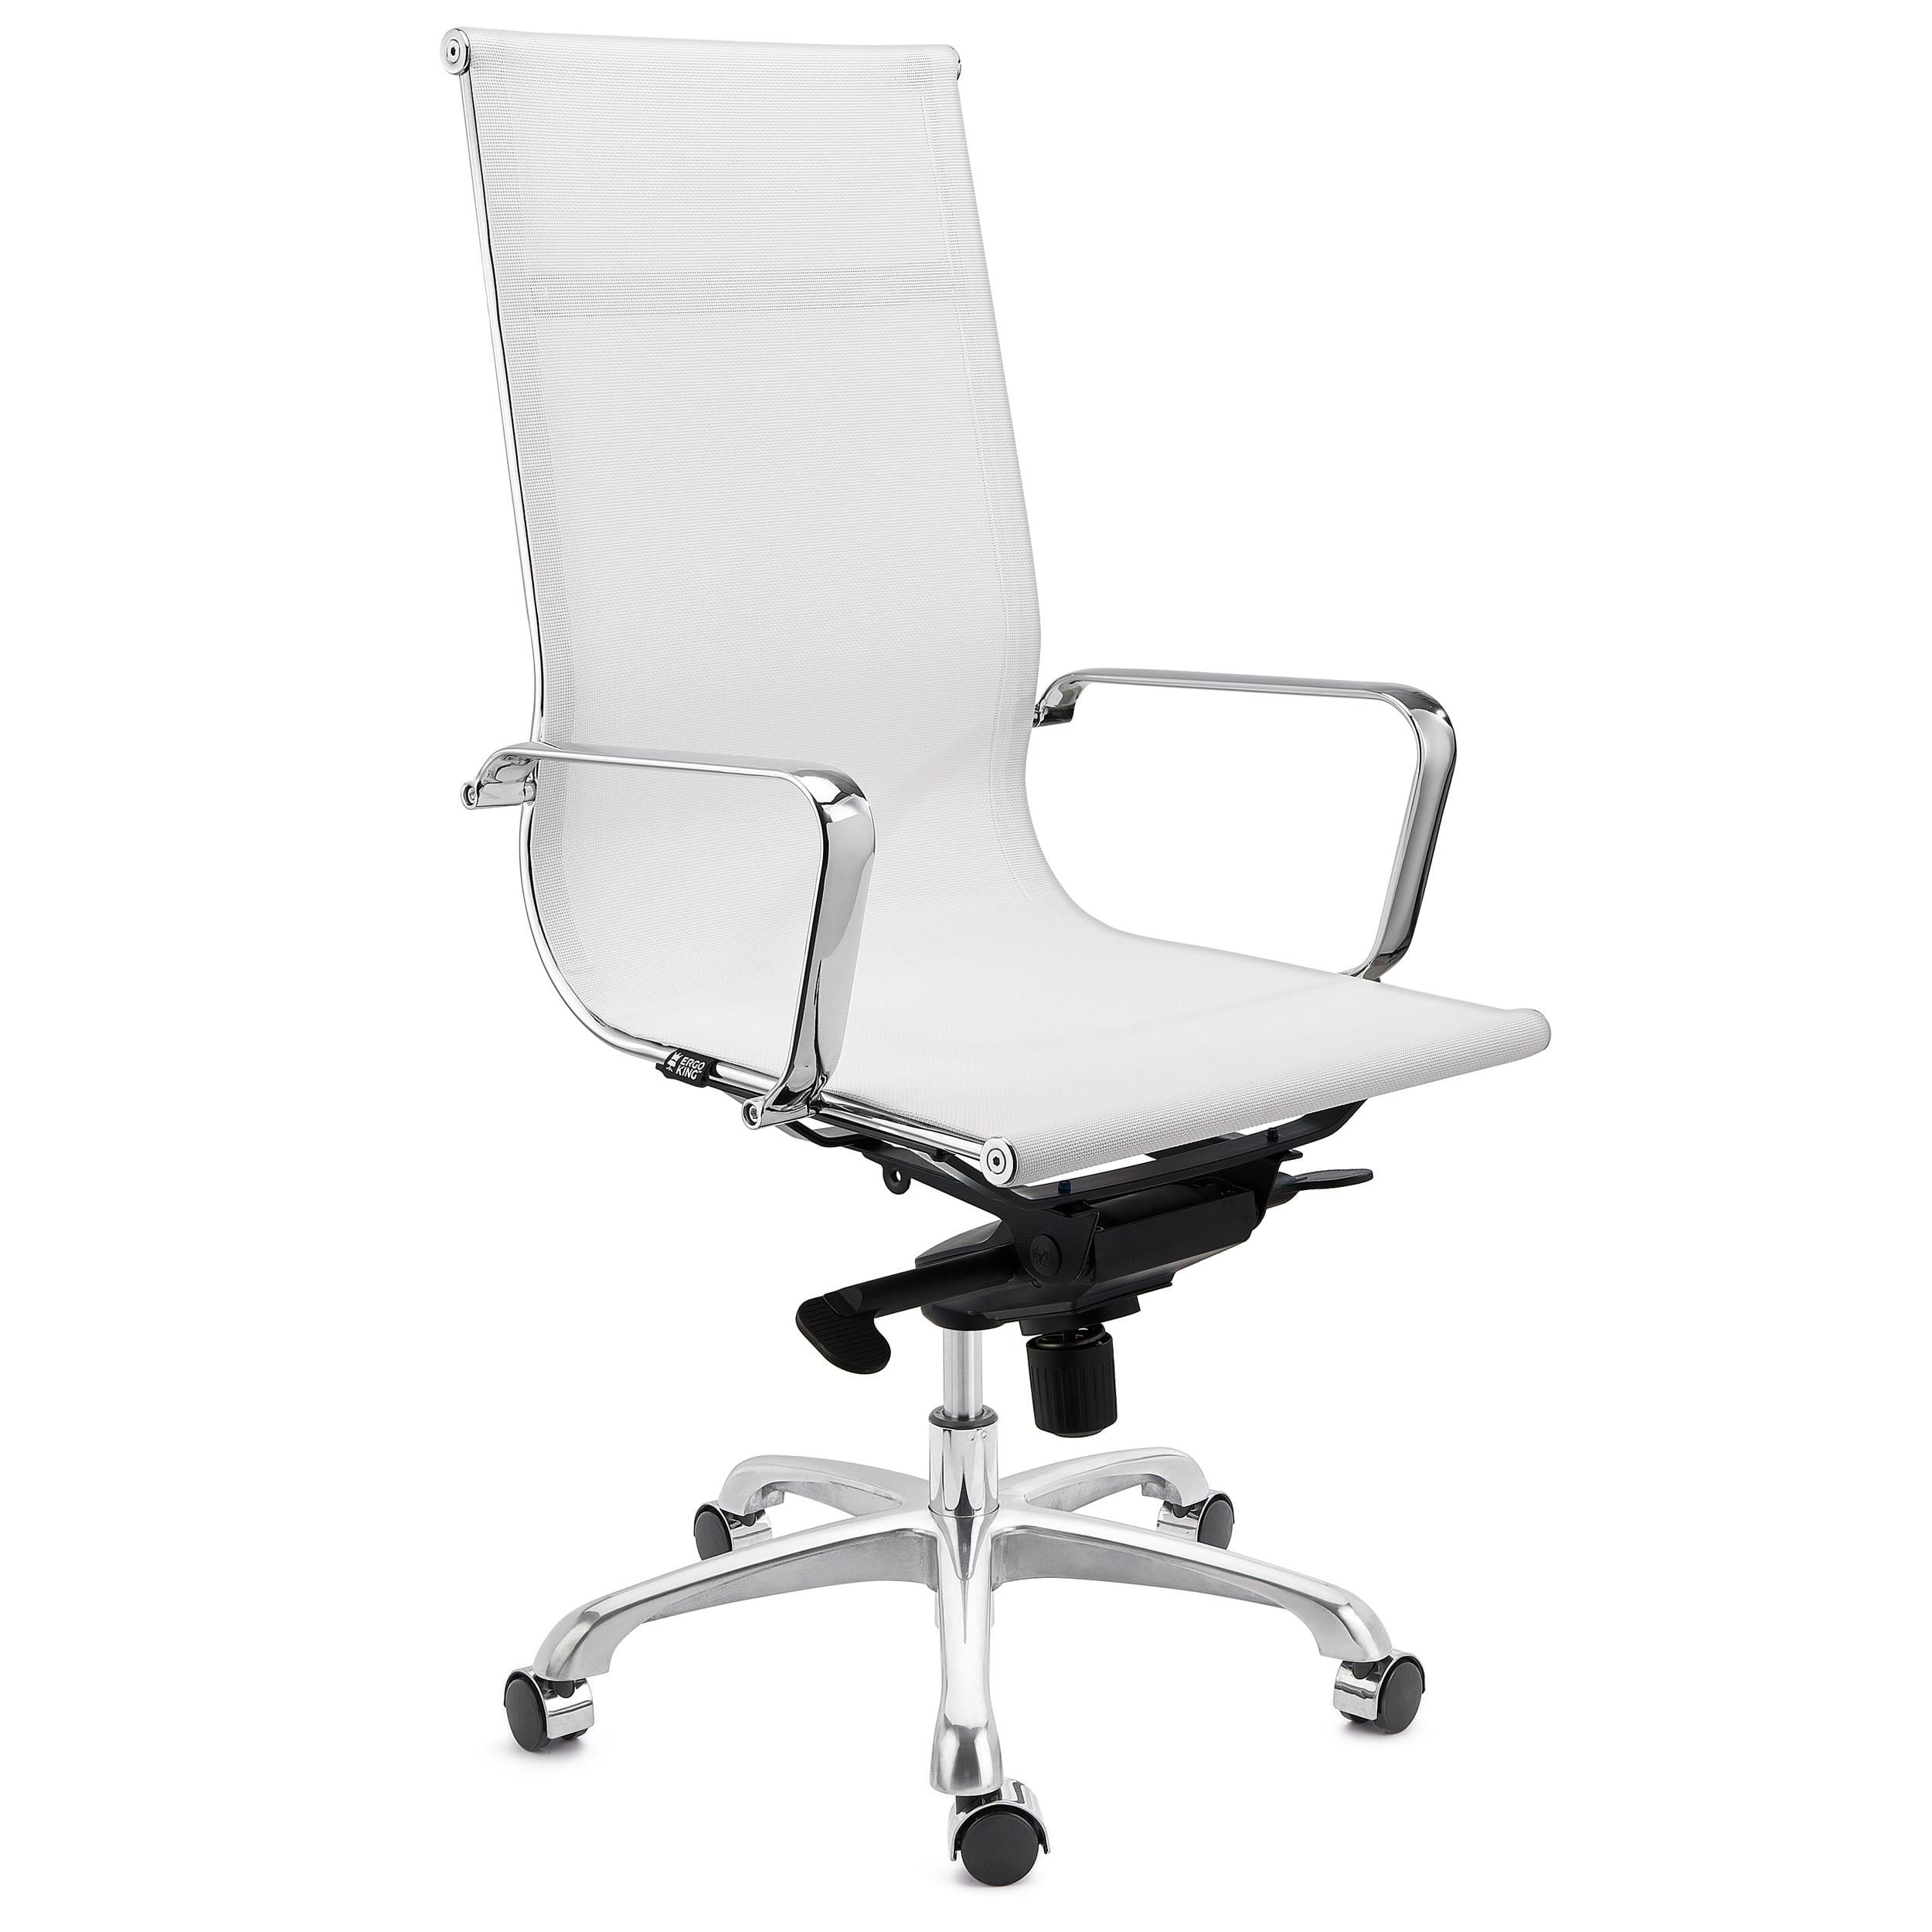 Chaise de bureau DOMI, Structure Métallique Chromée, Design élégant, En Maille, Blanc